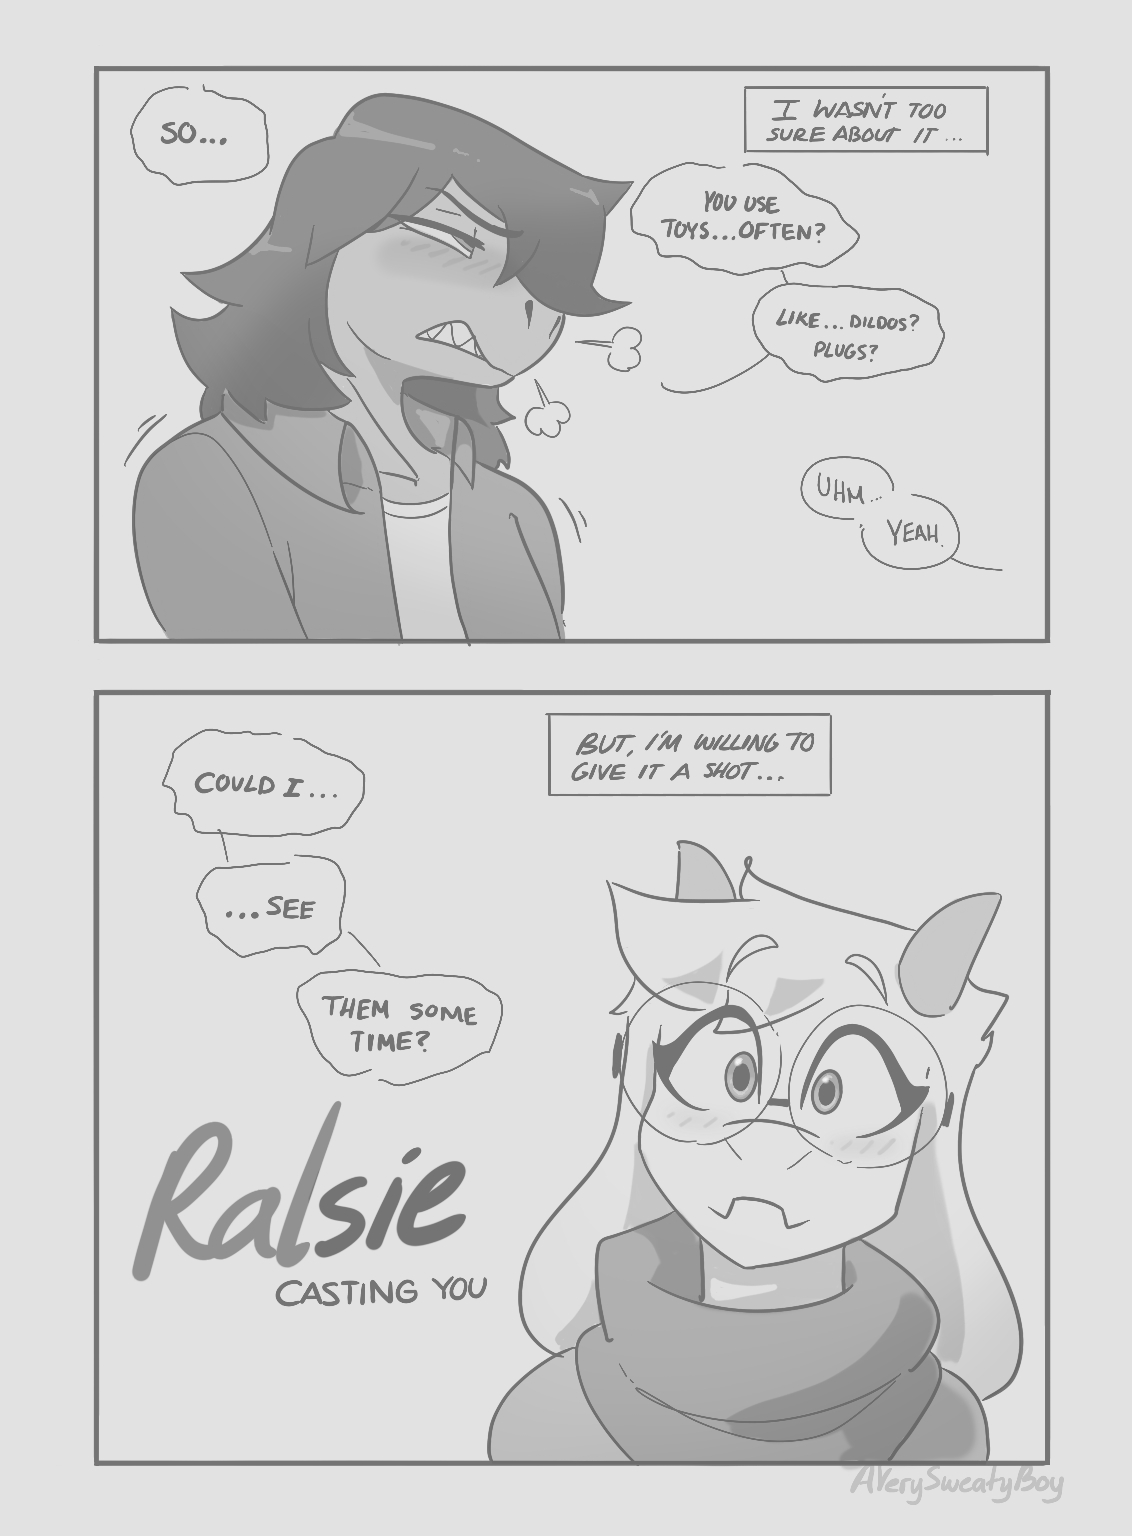 [AVerySweatyBoy] Ralsie - Casting You 1